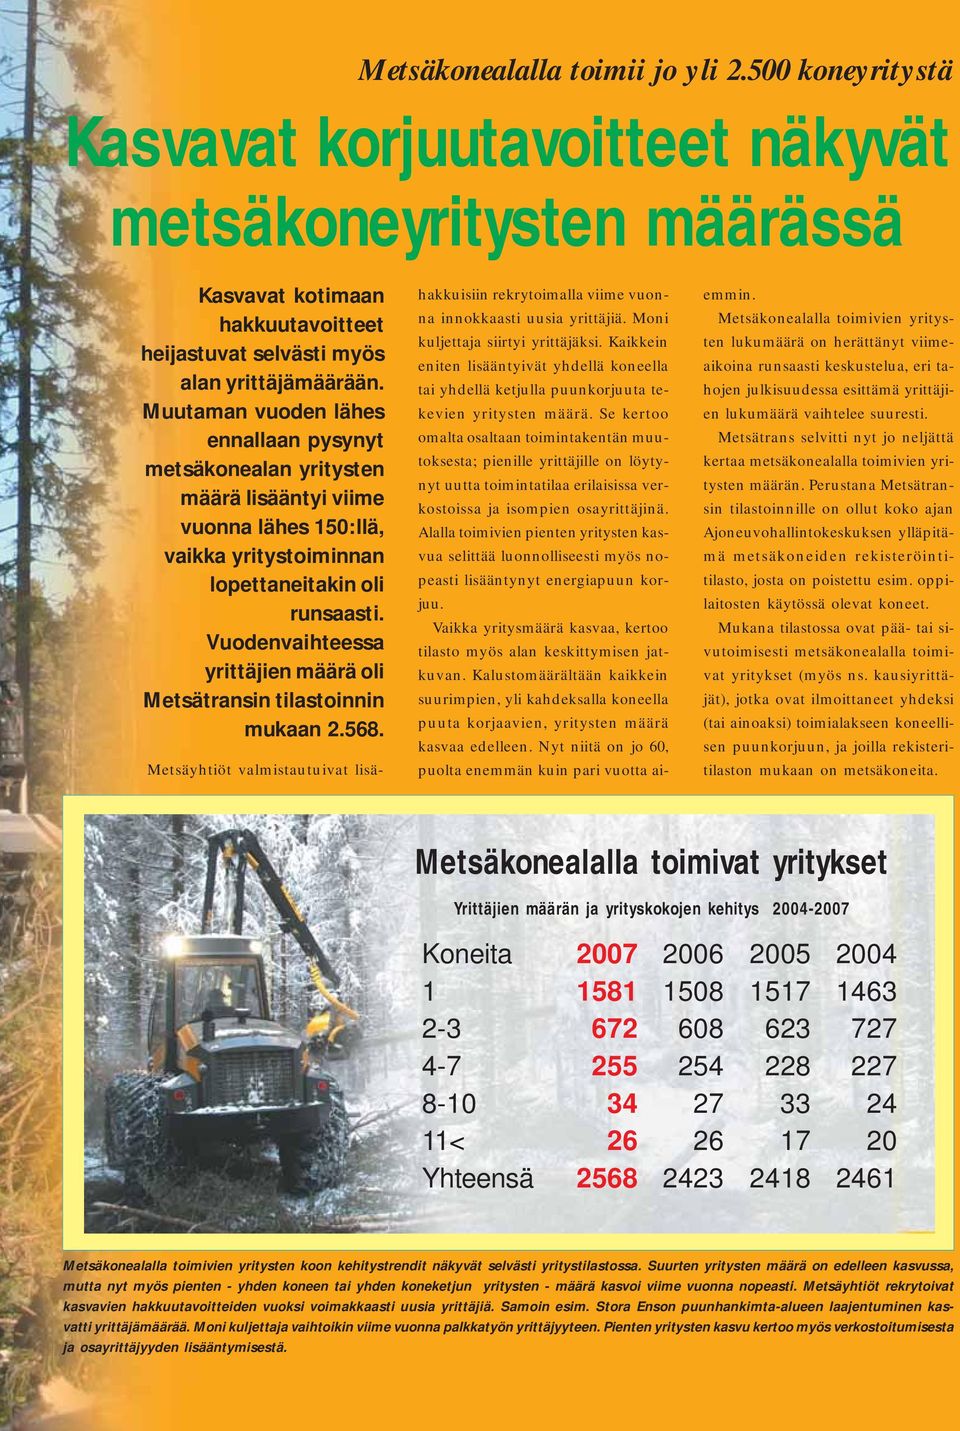 Vuodenvaihteessa yrittäjien määrä oli Metsätransin tilastoinnin mukaan.. Metsäyhtiöt valmistautuivat lisä hakkuisiin rekrytoimalla viime vuonna innokkaasti uusia yrittäjiä.